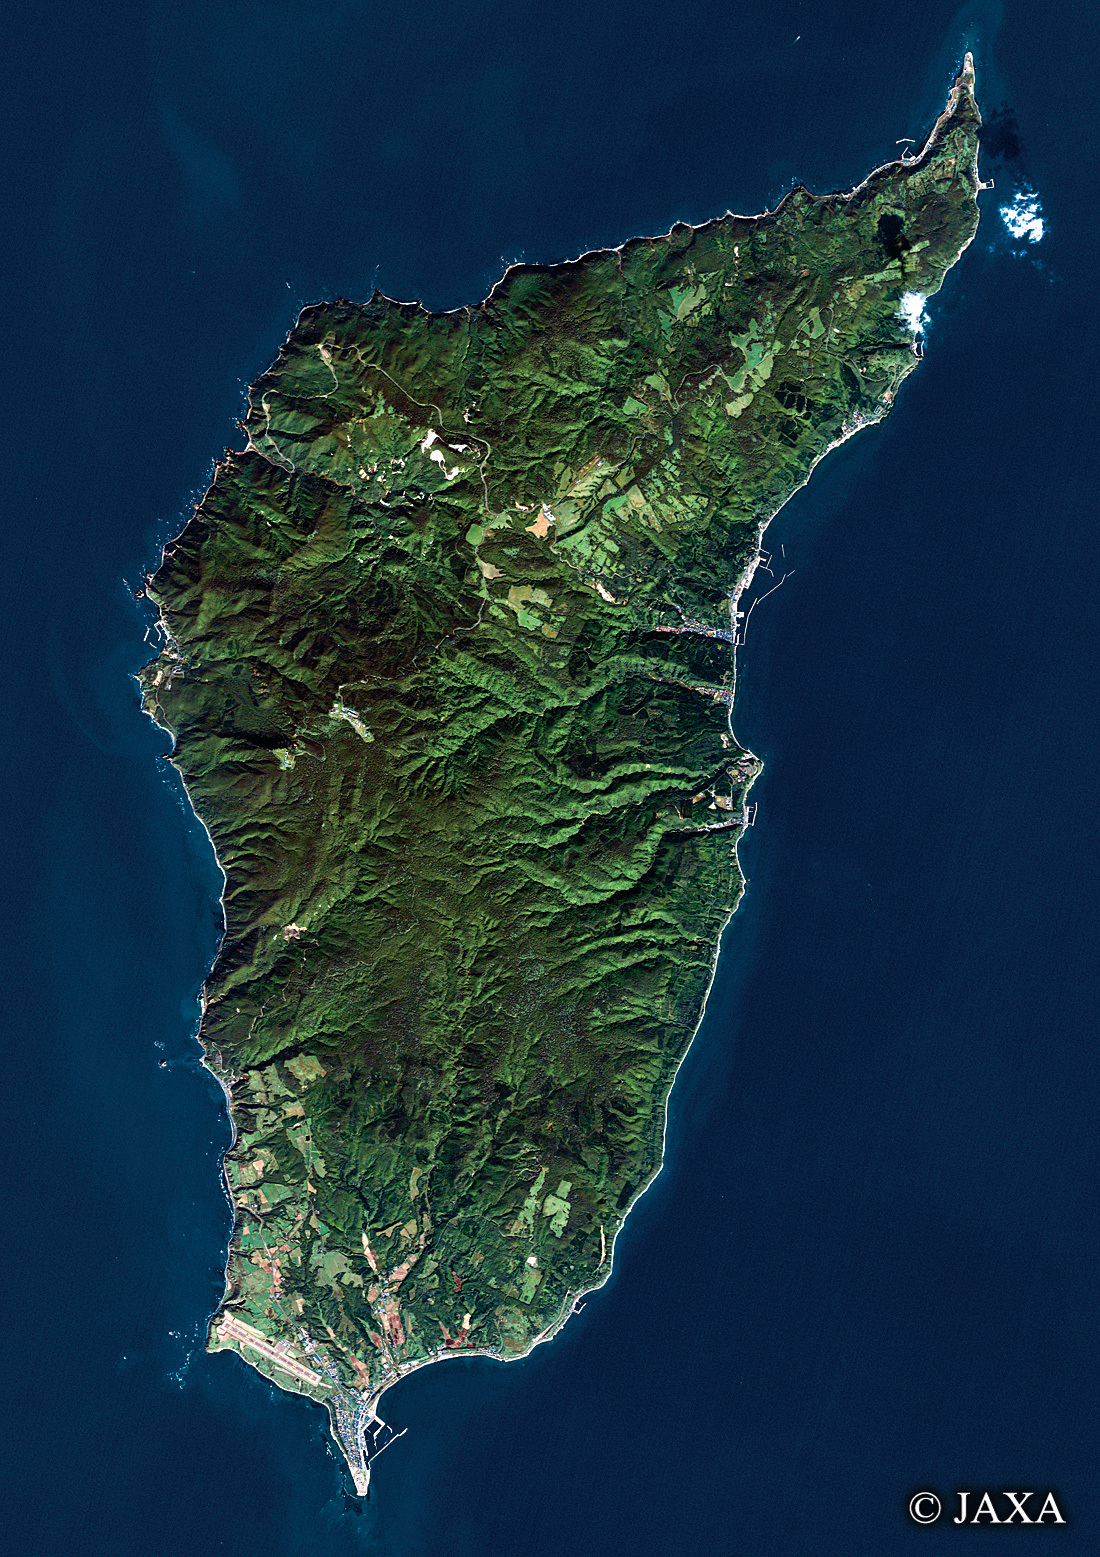 だいちから見た日本の都市 奥尻島:衛星画像